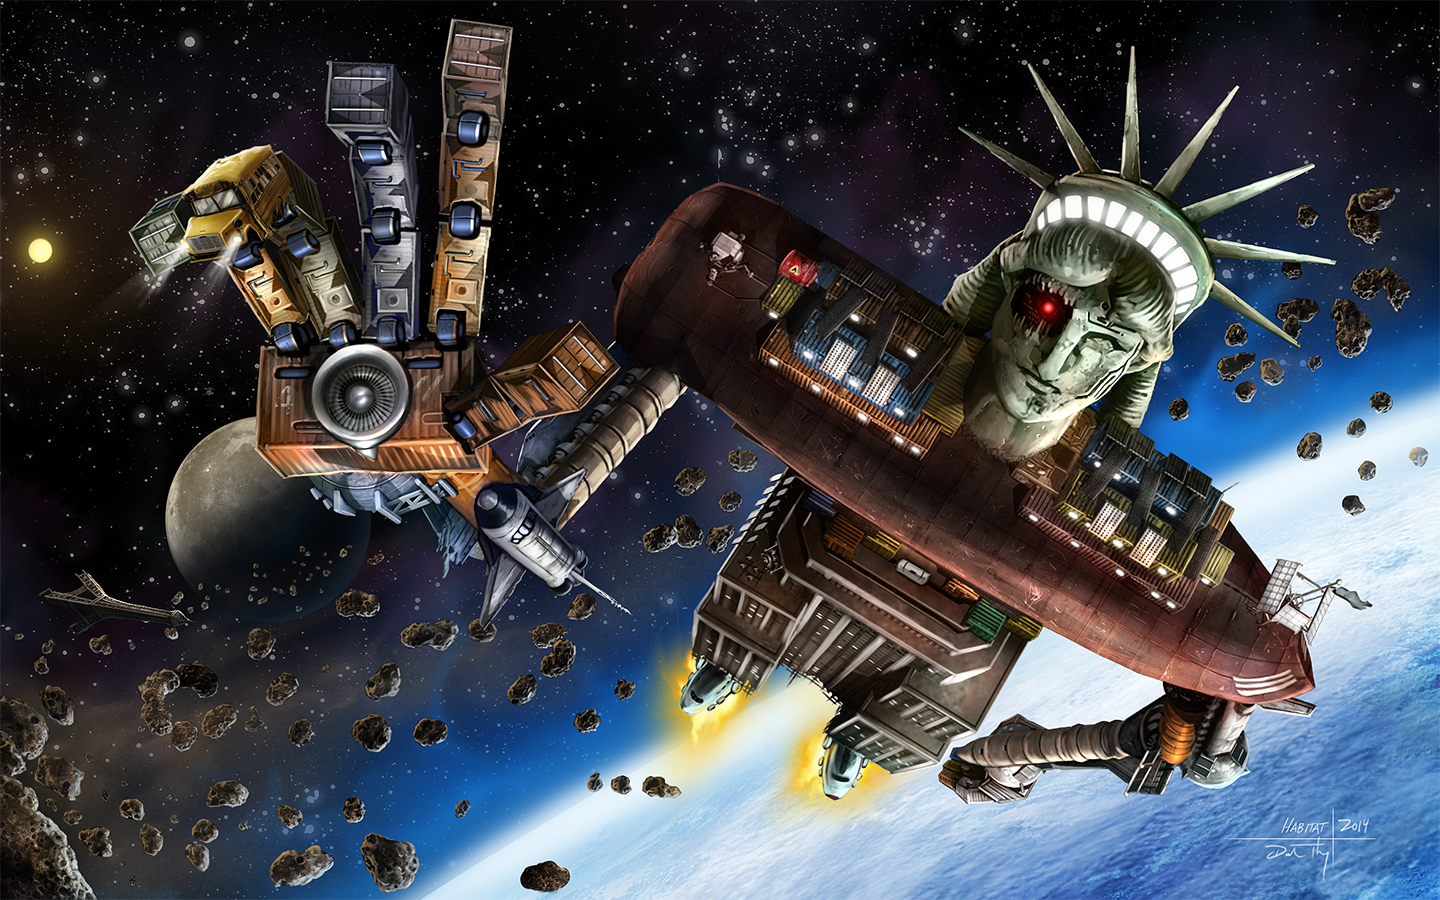 Space Game 'Habitat' Coming to mxdwn Games